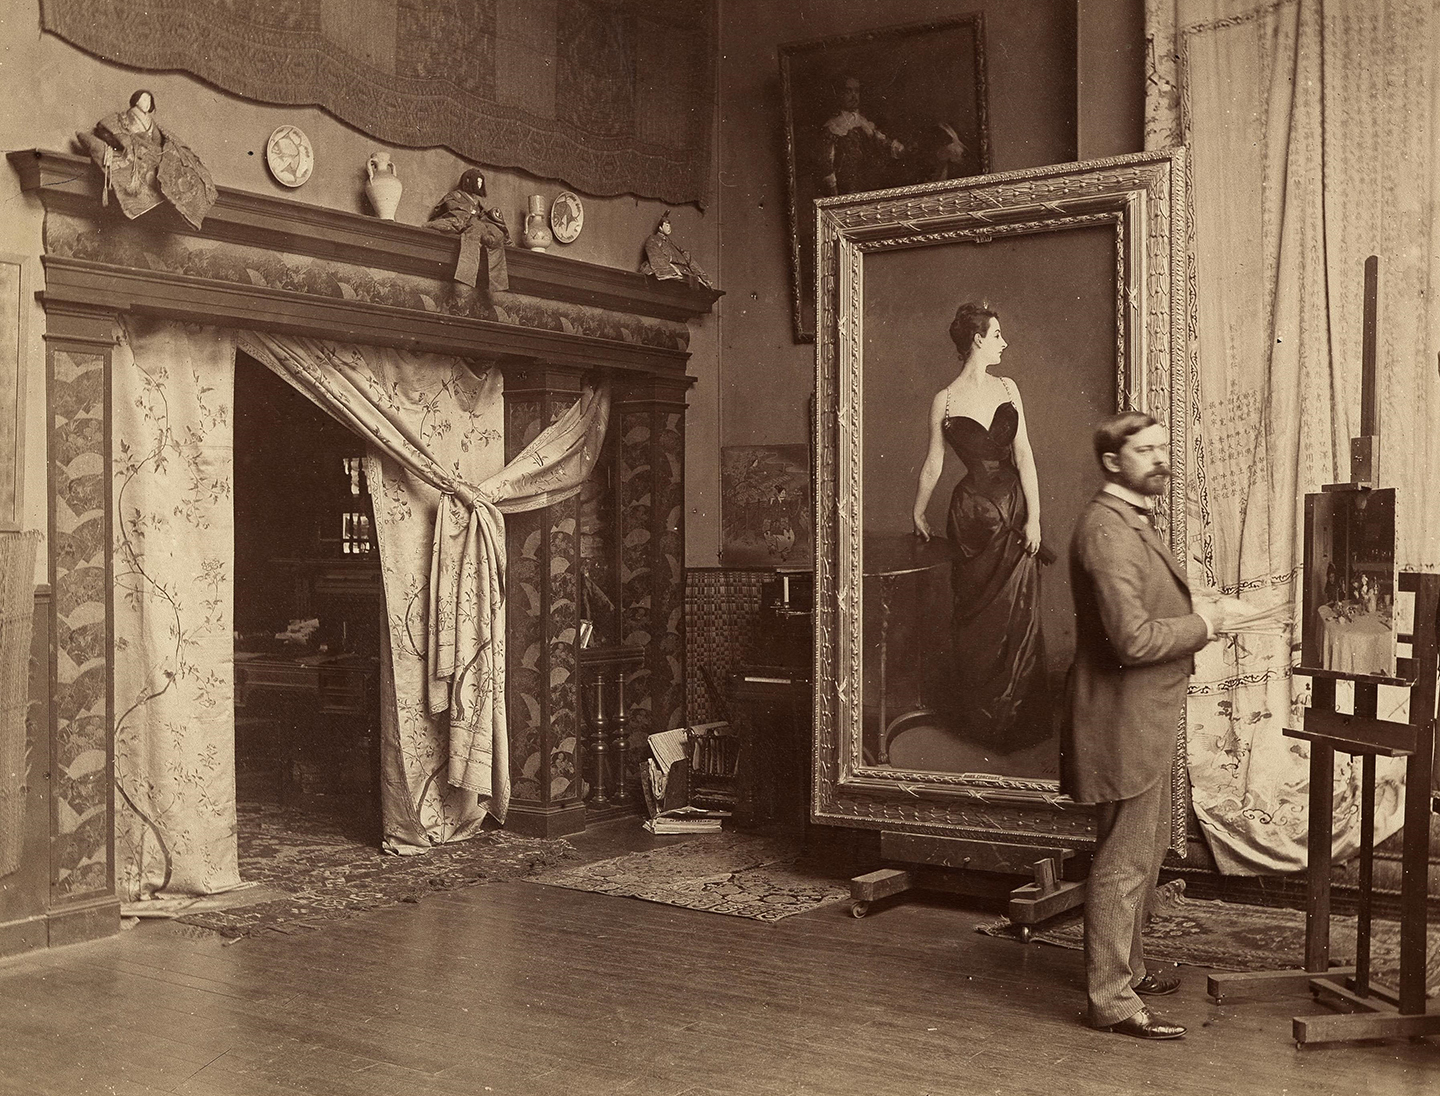 Họa sỹ John Singer Sargent bên cạnh bức tranh “Portrait of Madame X” (Chân Dung Quý Bà X) trong xưởng vẽ của mình tại Paris, năm 1885, ảnh do nhiếp ảnh gia Adolphe Giraudon chụp. (Ảnh: Tư liệu công cộng)